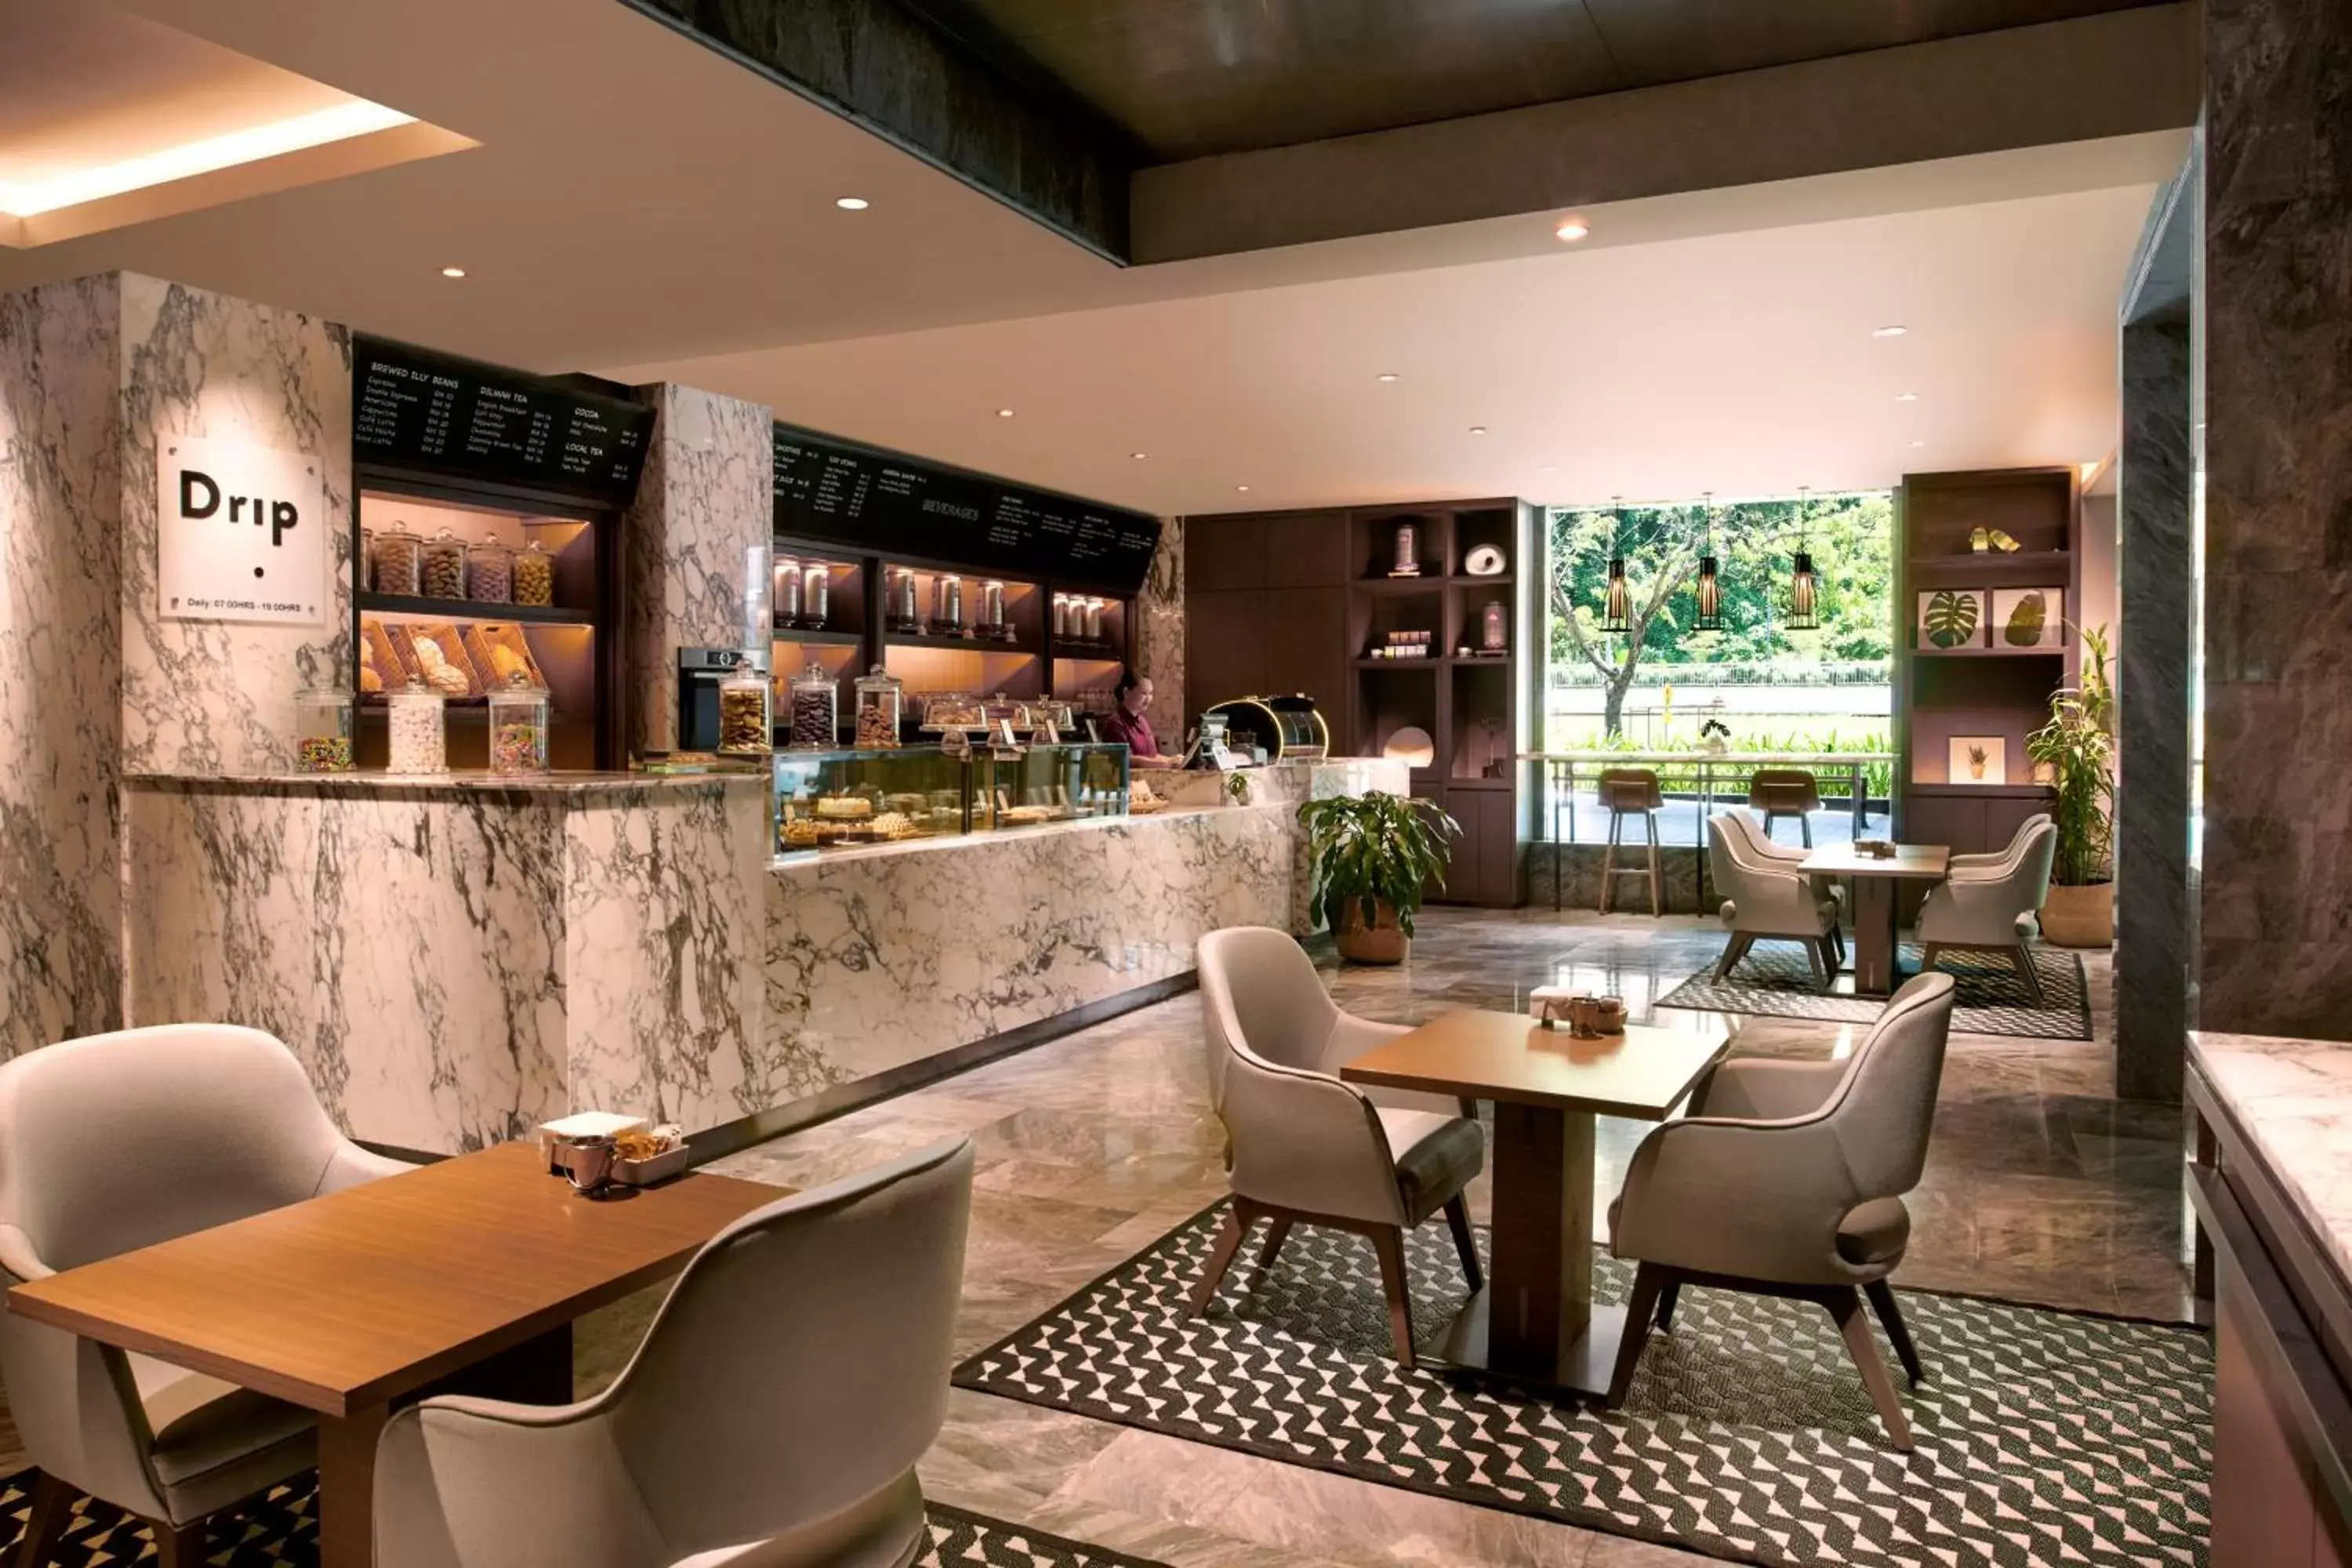 Restaurant/places to eat, Lounge/Bar in Hilton Kota Kinabalu